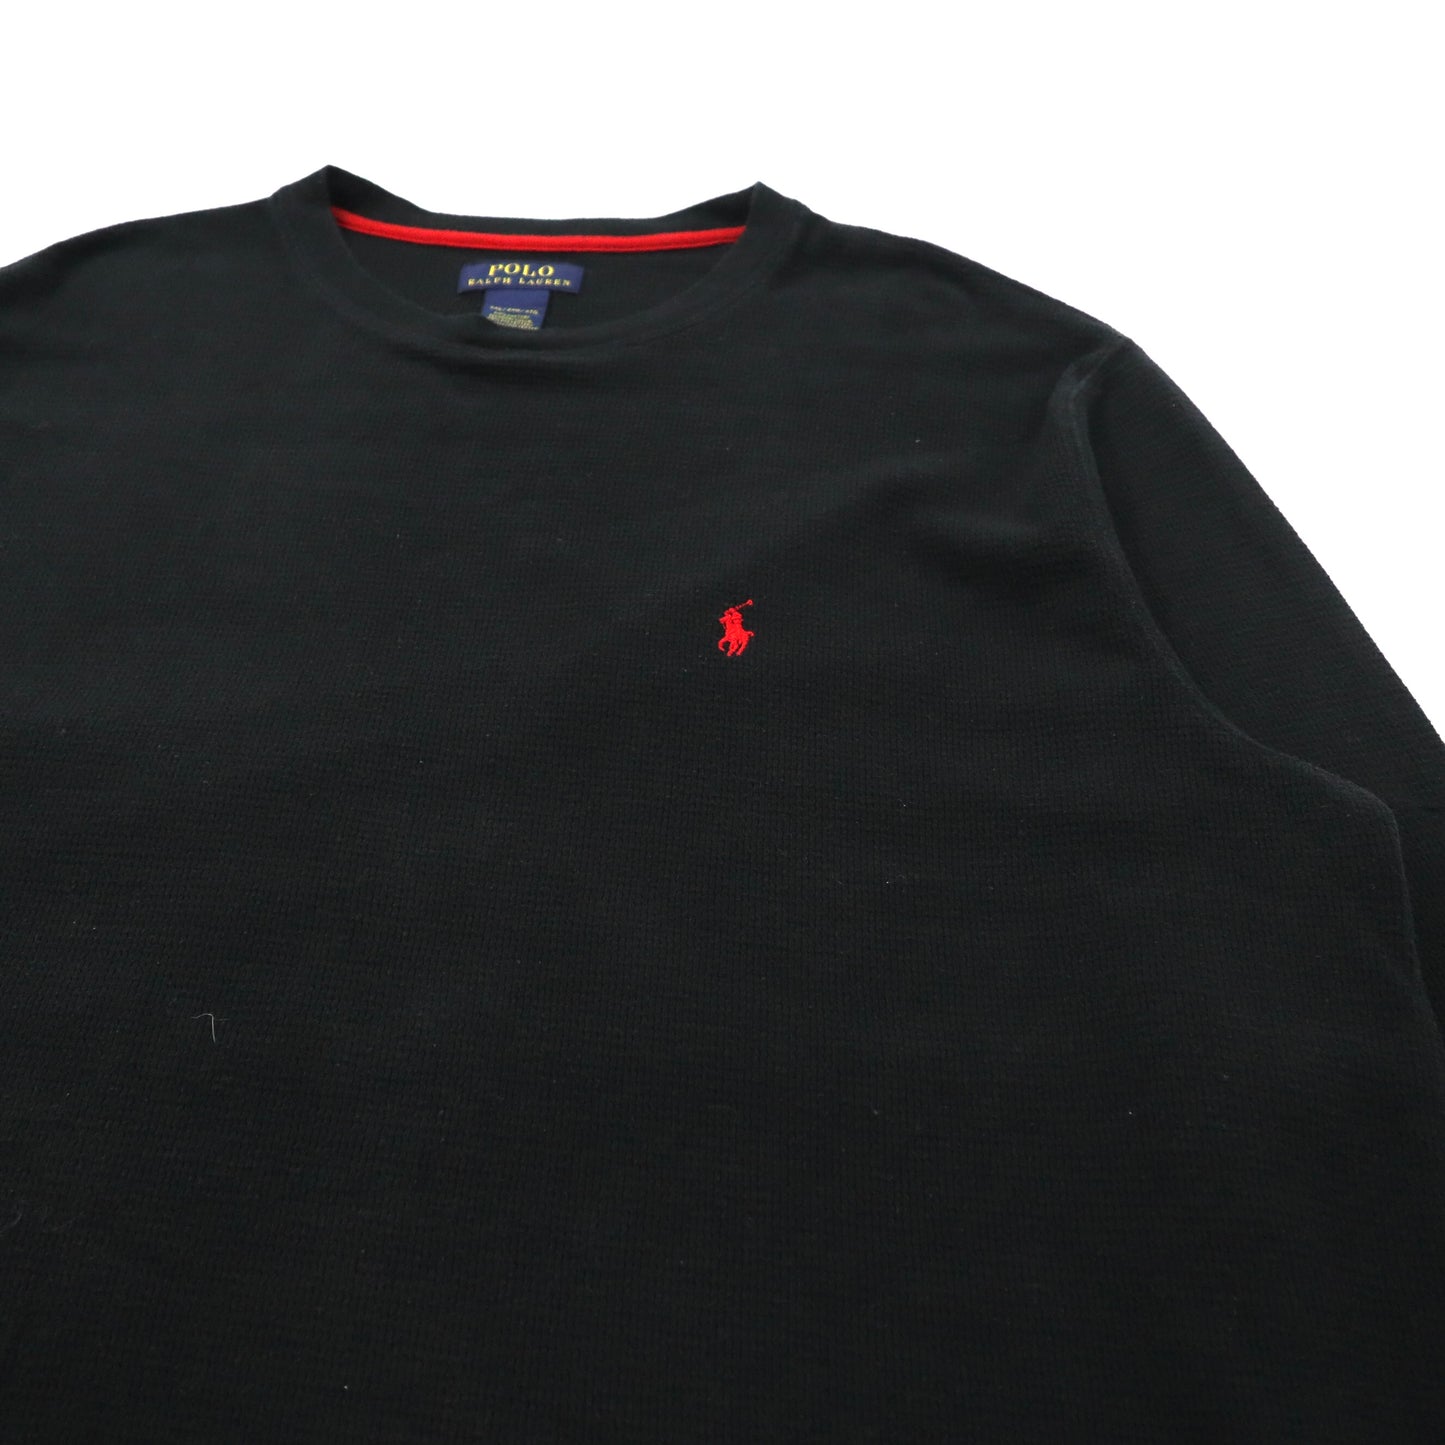 POLO RALPH LAUREN サーマル ロングスリーブTシャツ 2XL ブラック コットン スモールポニー刺繍 ビッグサイズ